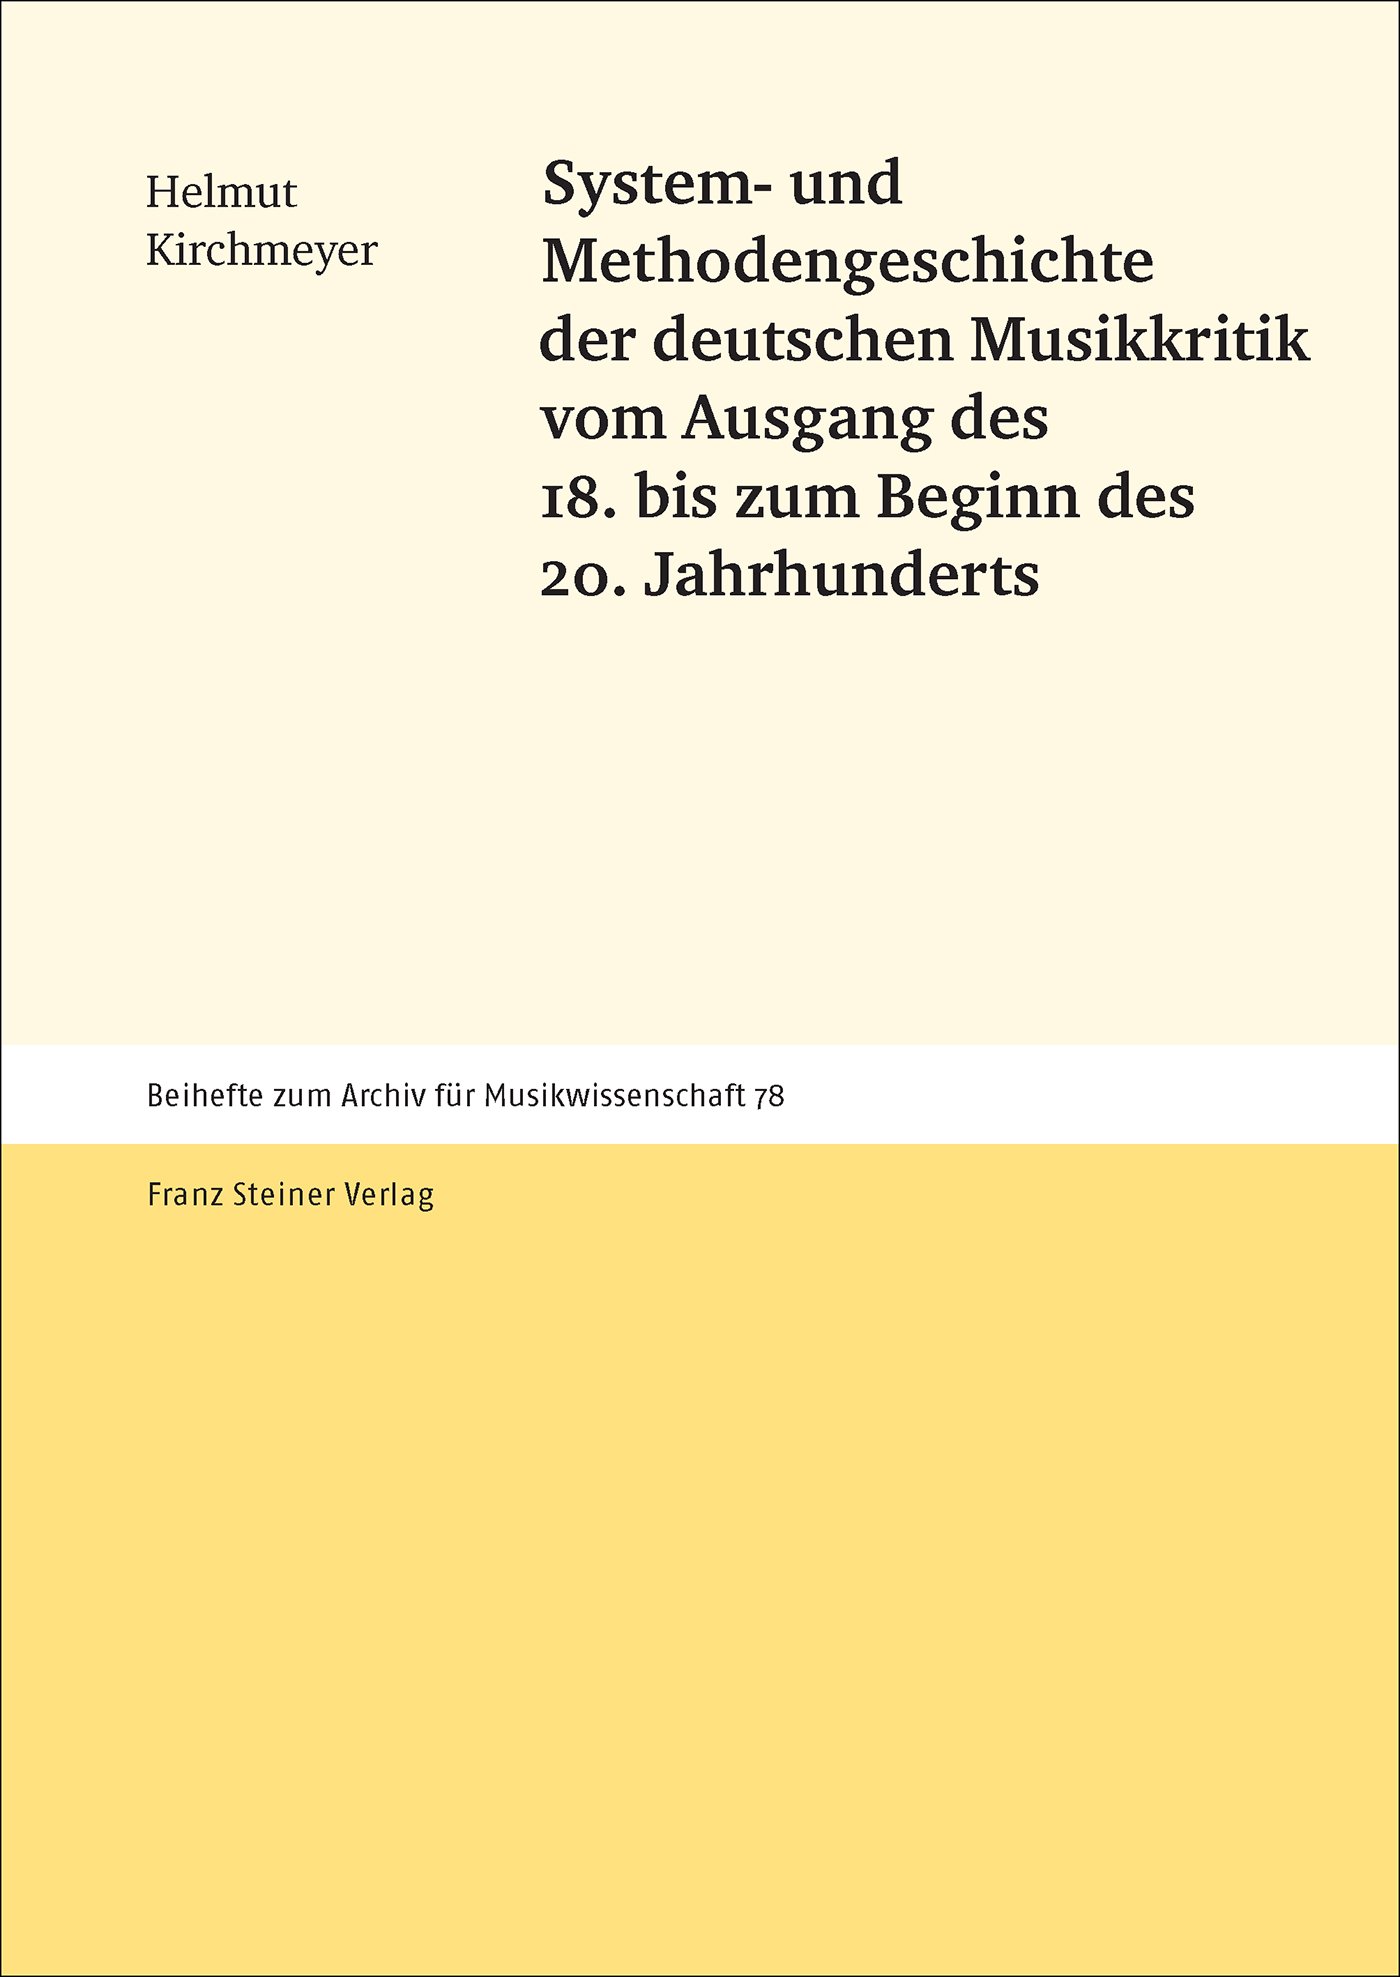 System- und Methodengeschichte der deutschen Musikkritik vom Ausgang des 18. bis zum Beginn des 20. Jahrhunderts